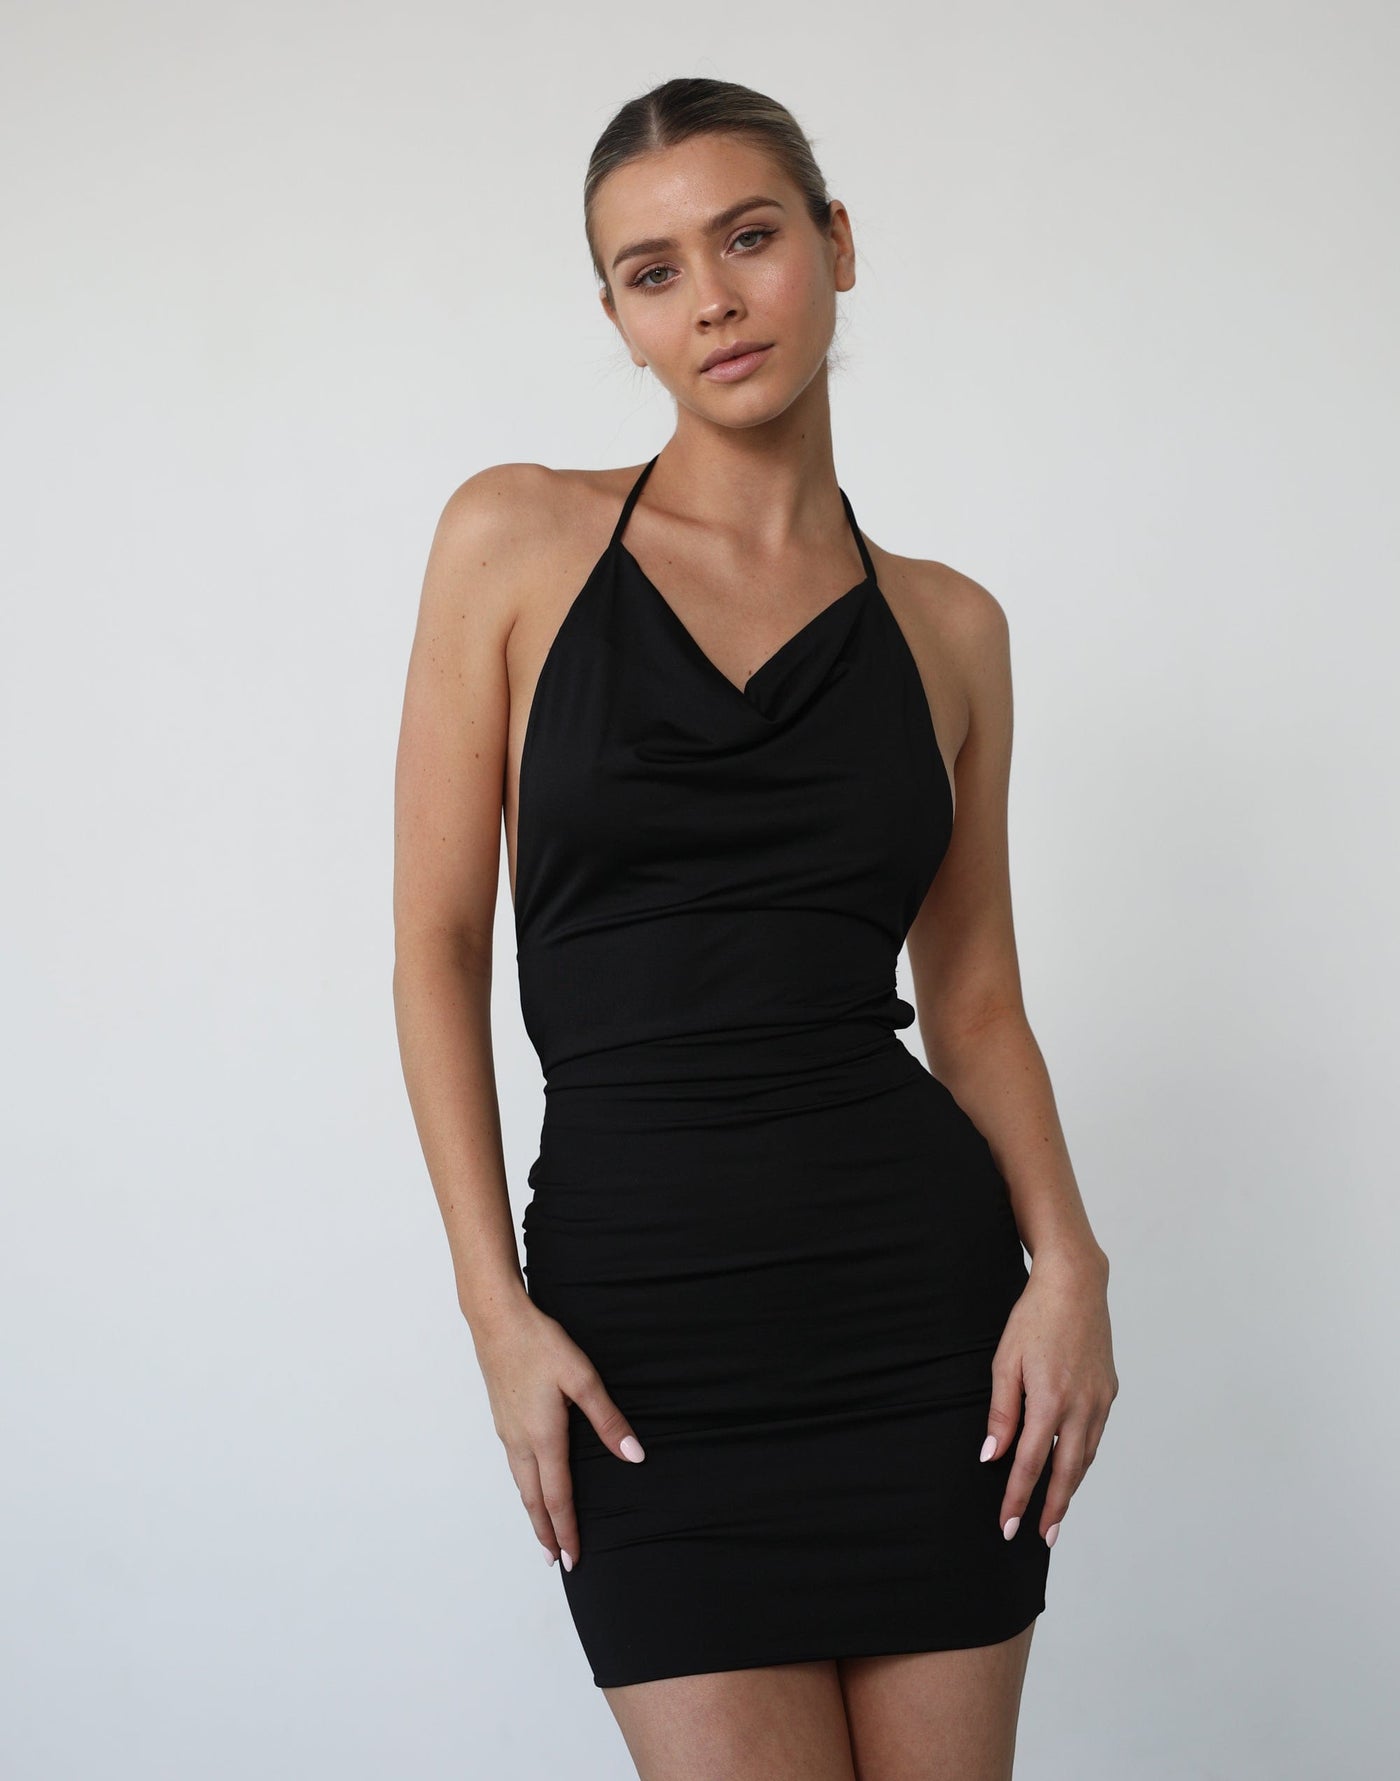 Raena Mini Dress (Black) - Open Back Cowl Neck Mini Dress Mini Dress - Women's Dress - Charcoal Clothing